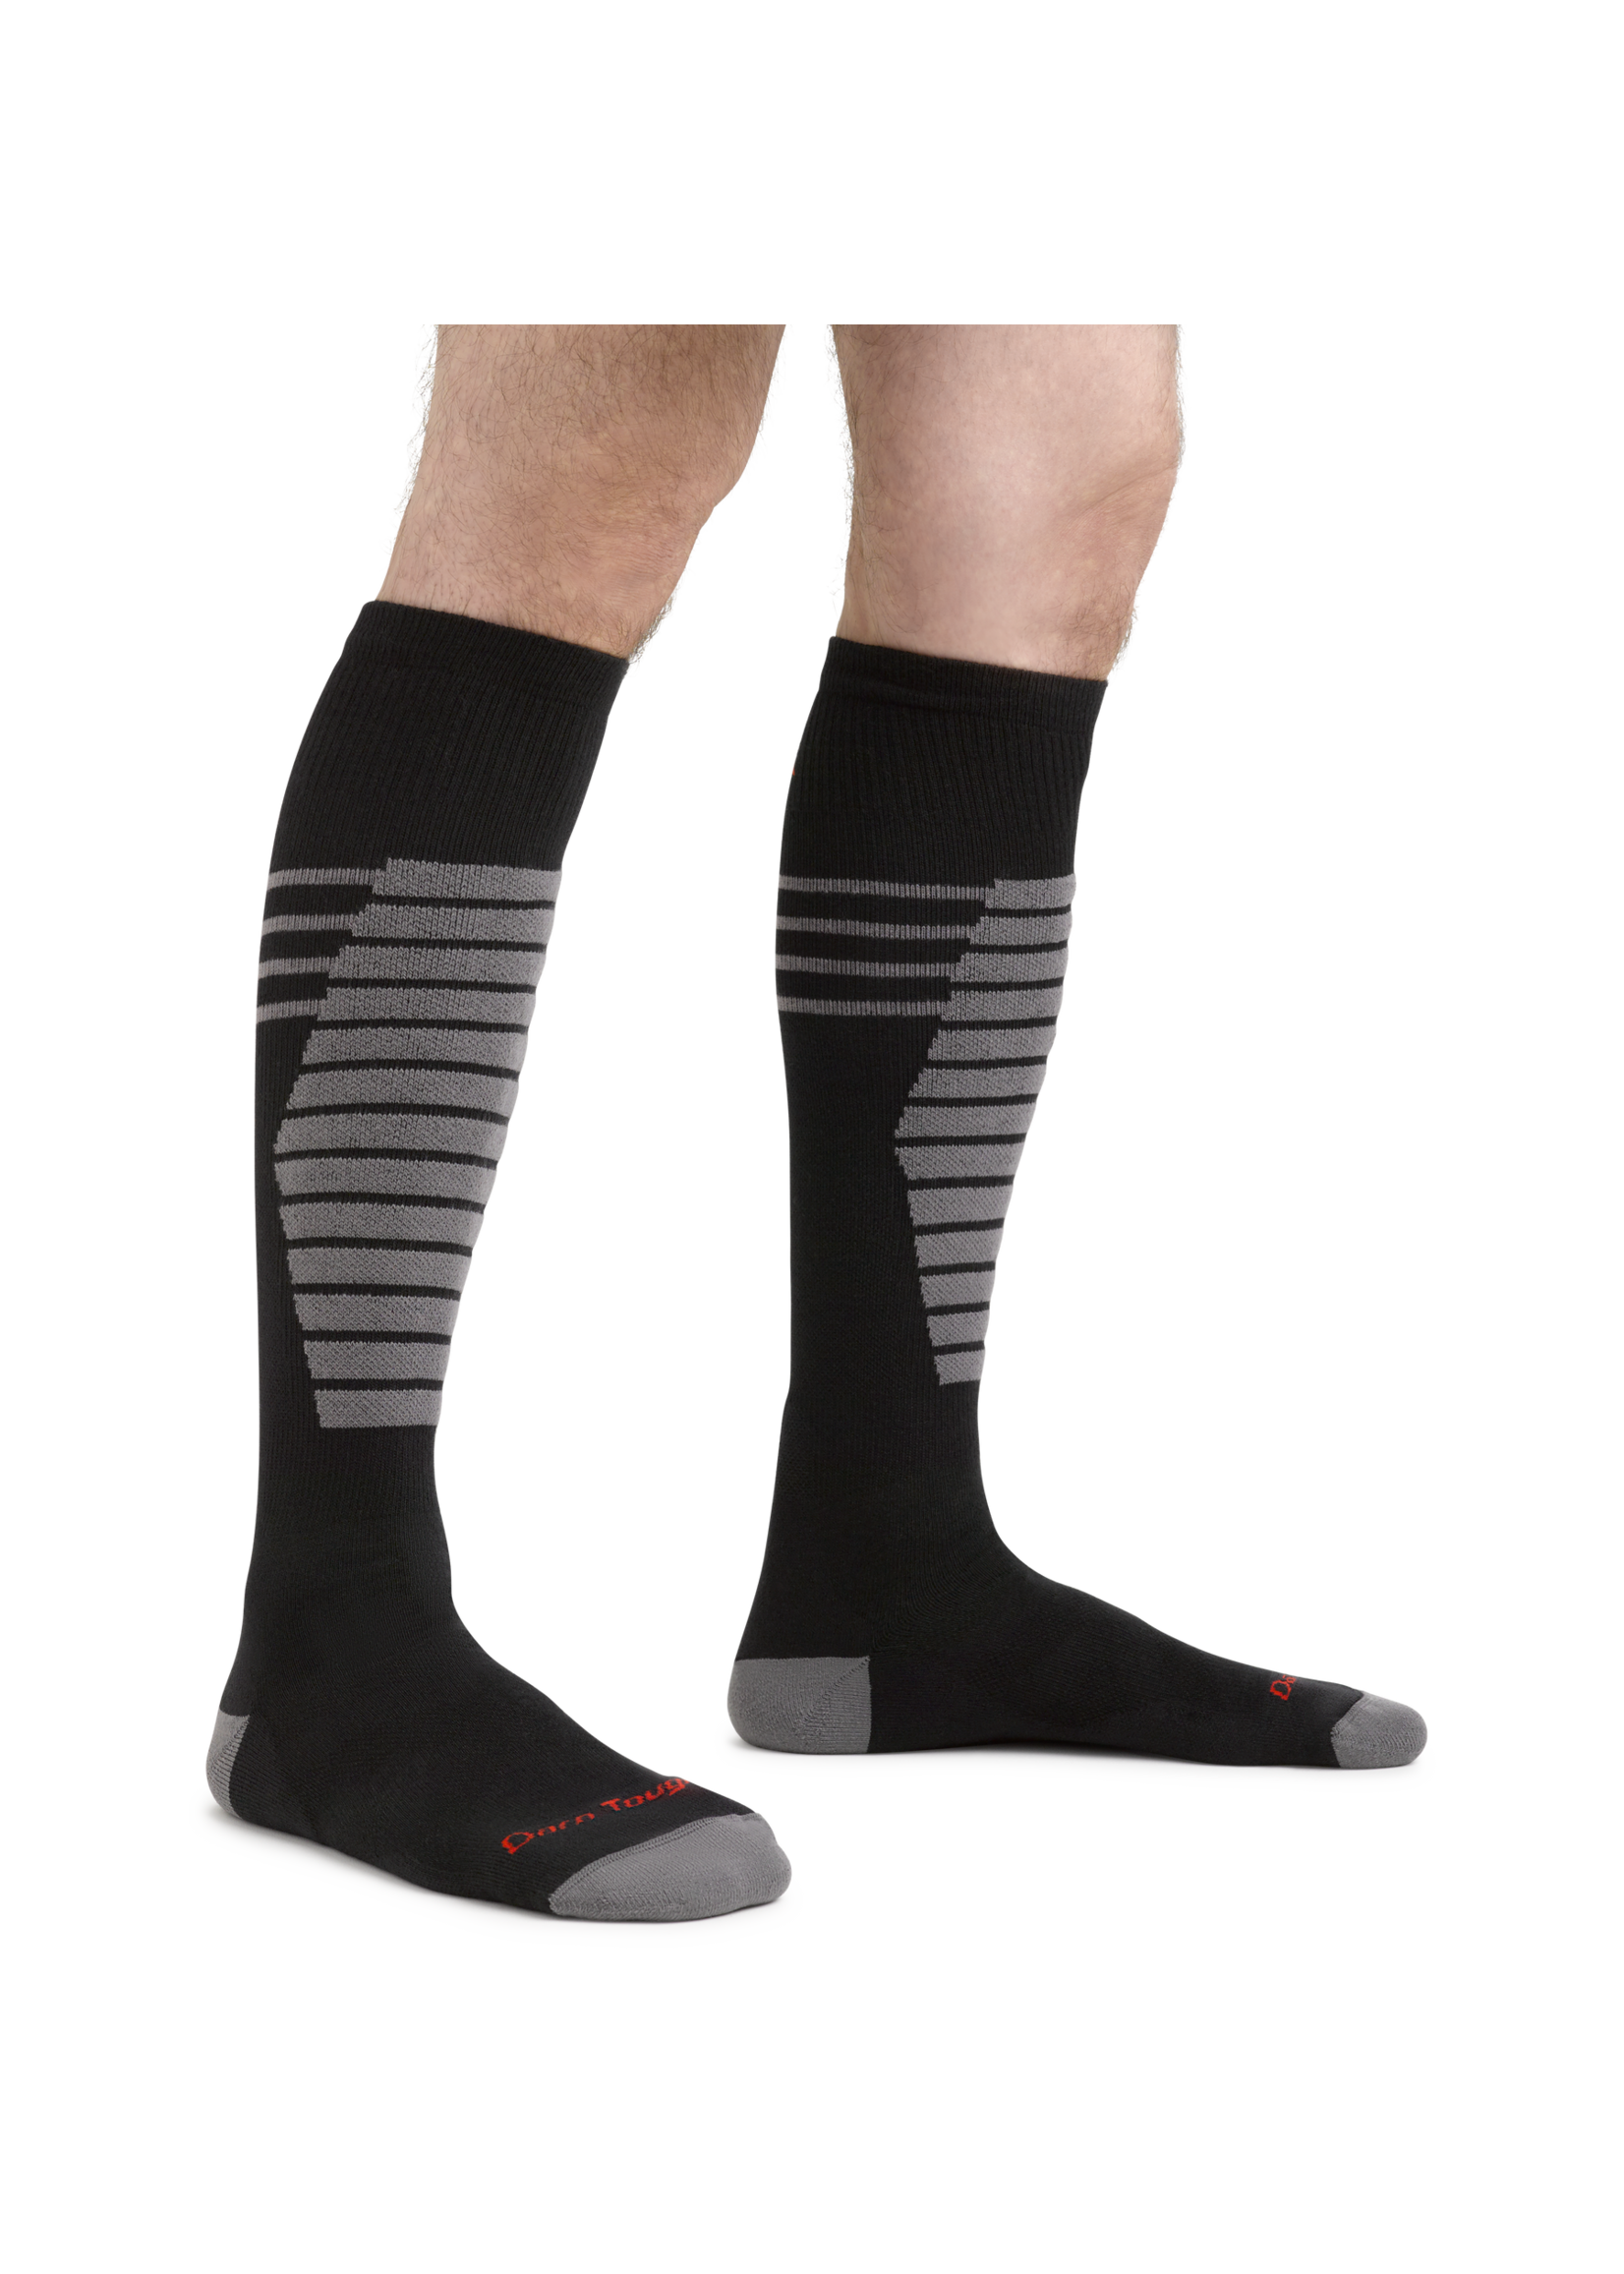 Darn Tough Darn Tough Men's Thermolite® Edge OTC Midweight Snow Sock